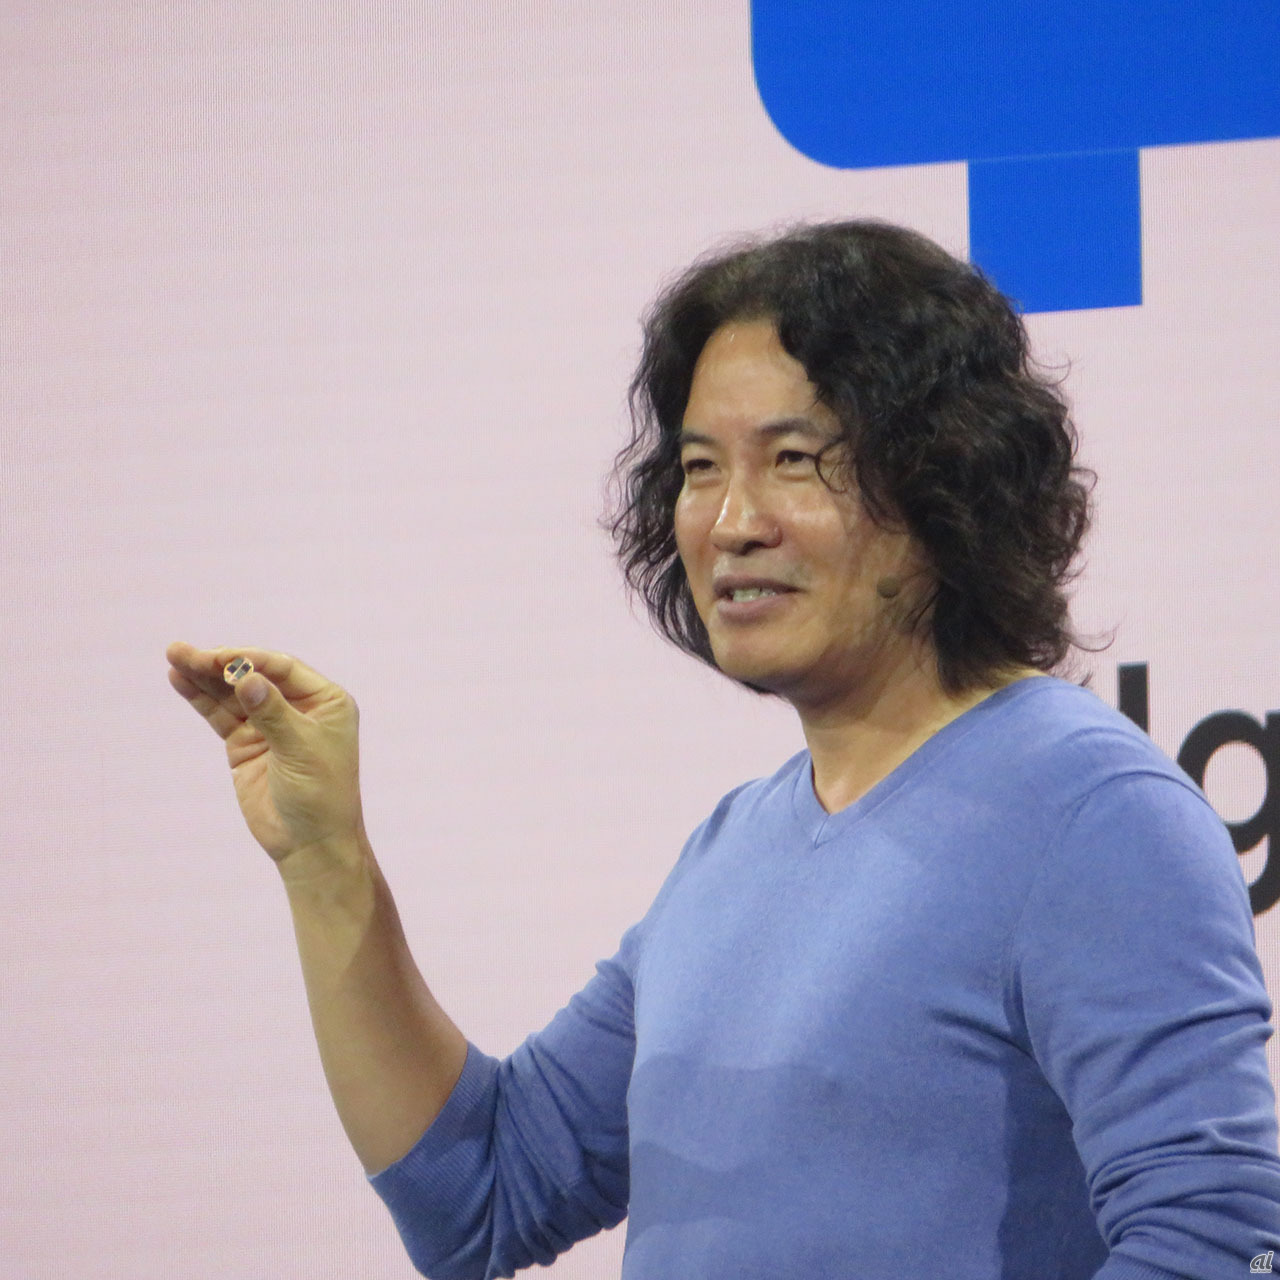 Google CloudでIoT担当バイスプレジデントを務めるInjong Rhee氏。GoogleのIoTの取り組みに可能性を感じ、6カ月前に入社したという